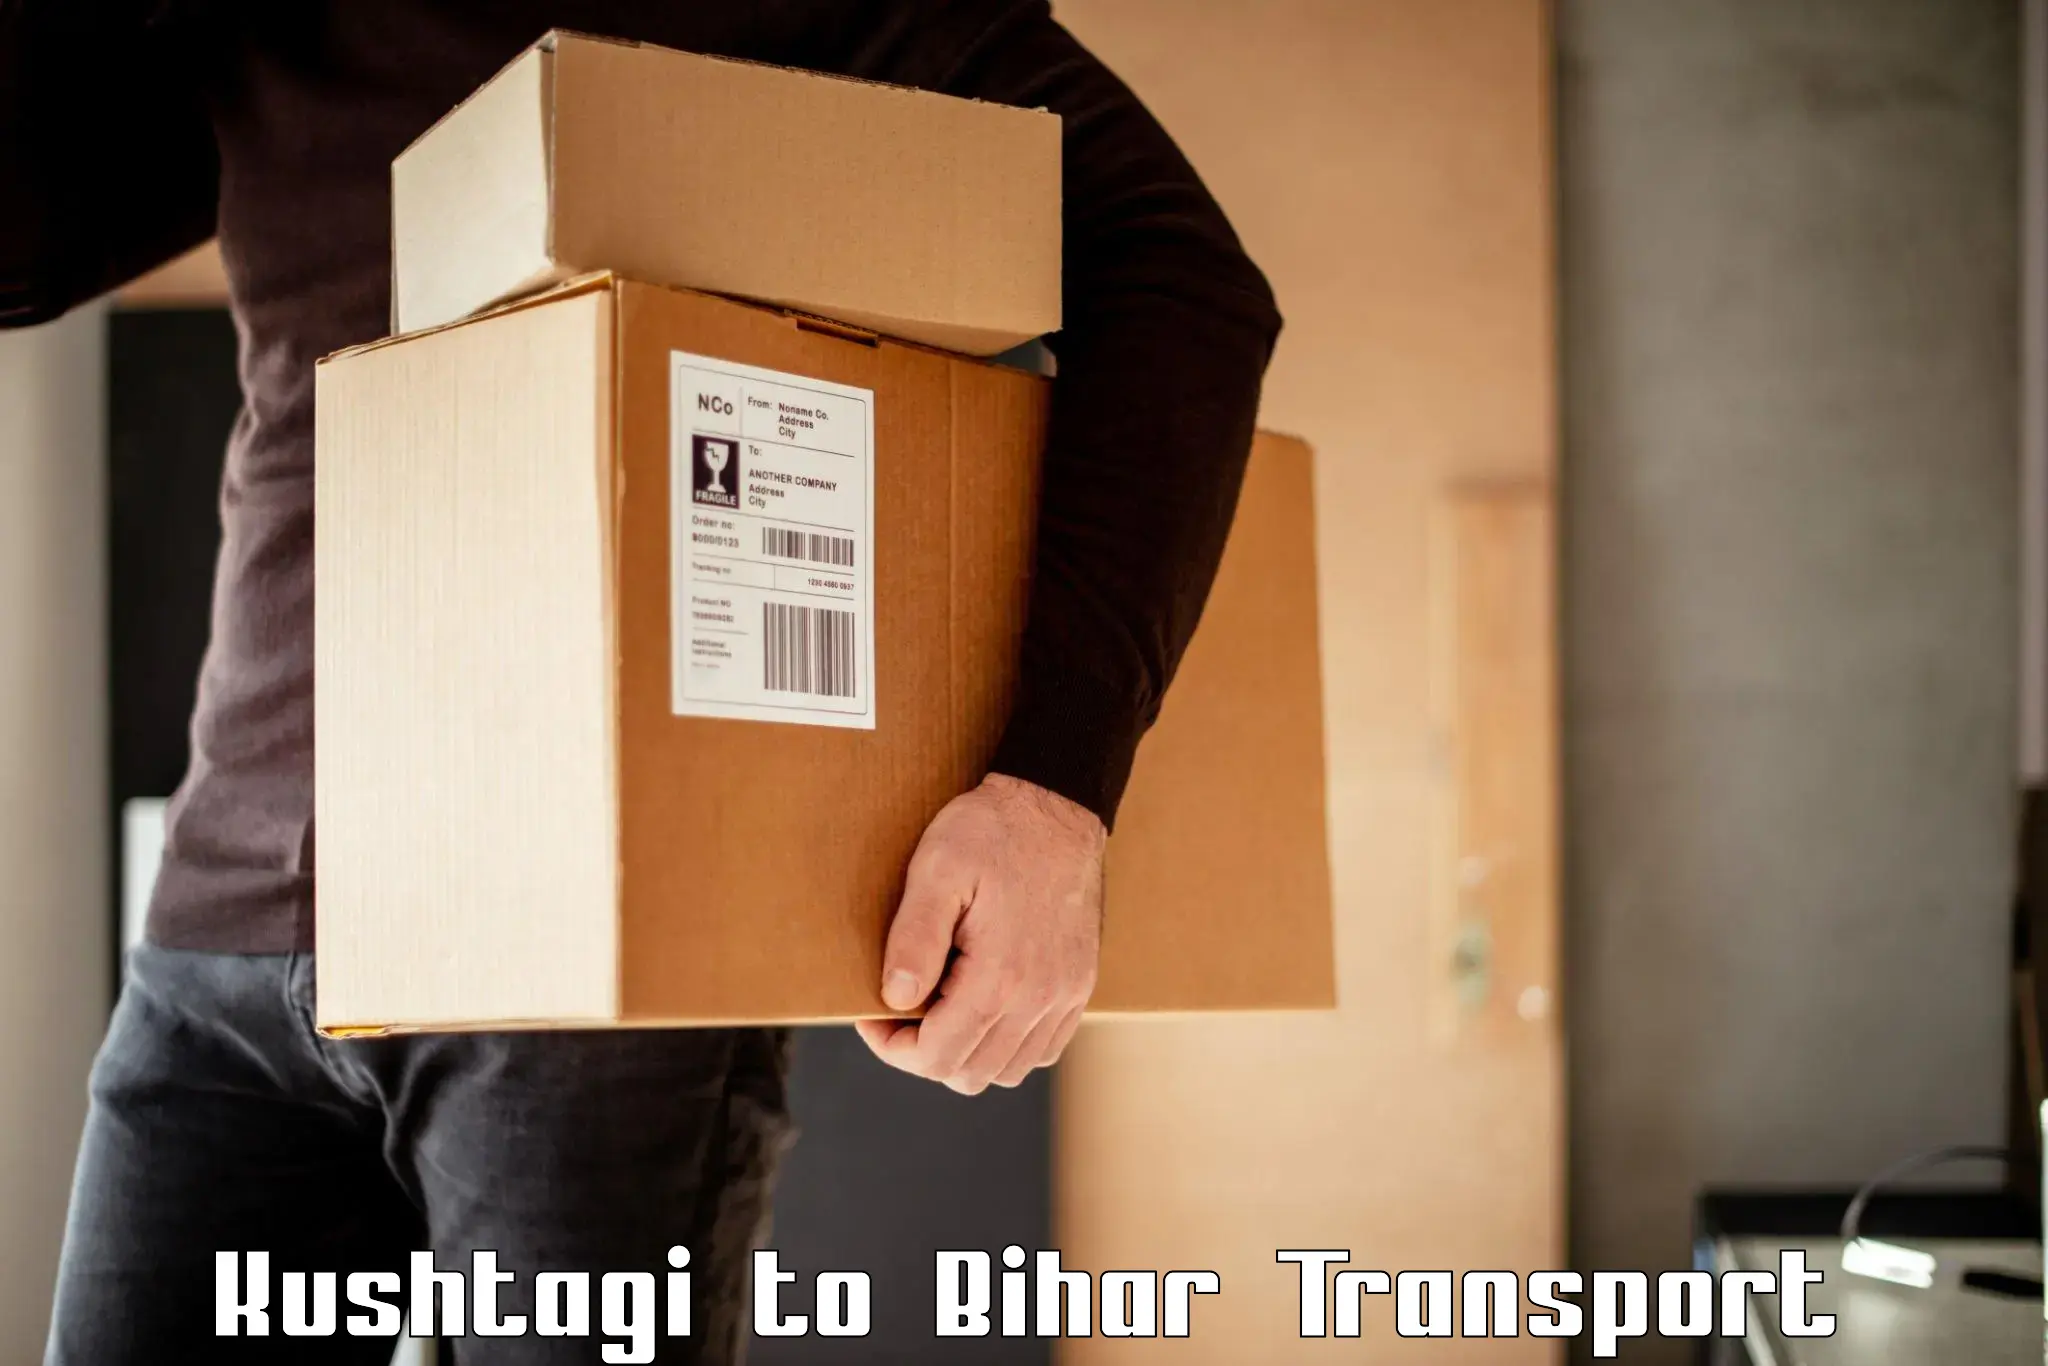 International cargo transportation services Kushtagi to Supaul